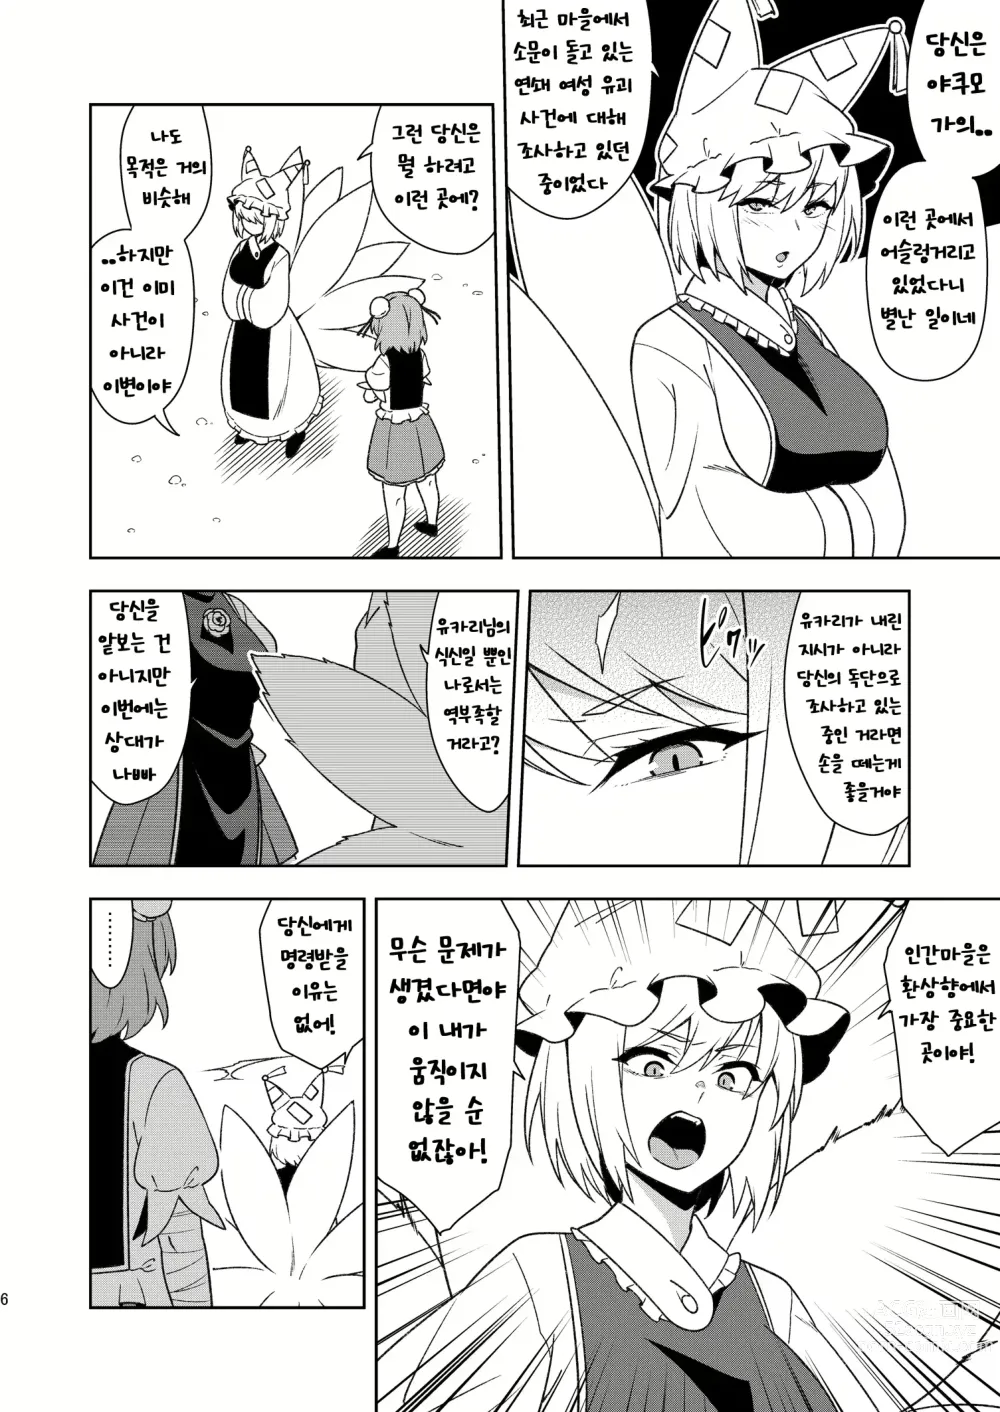 Page 5 of doujinshi Butou bouchuujutsu retsuden in Pi musou l 무투방중술열전 음란핑크무쌍